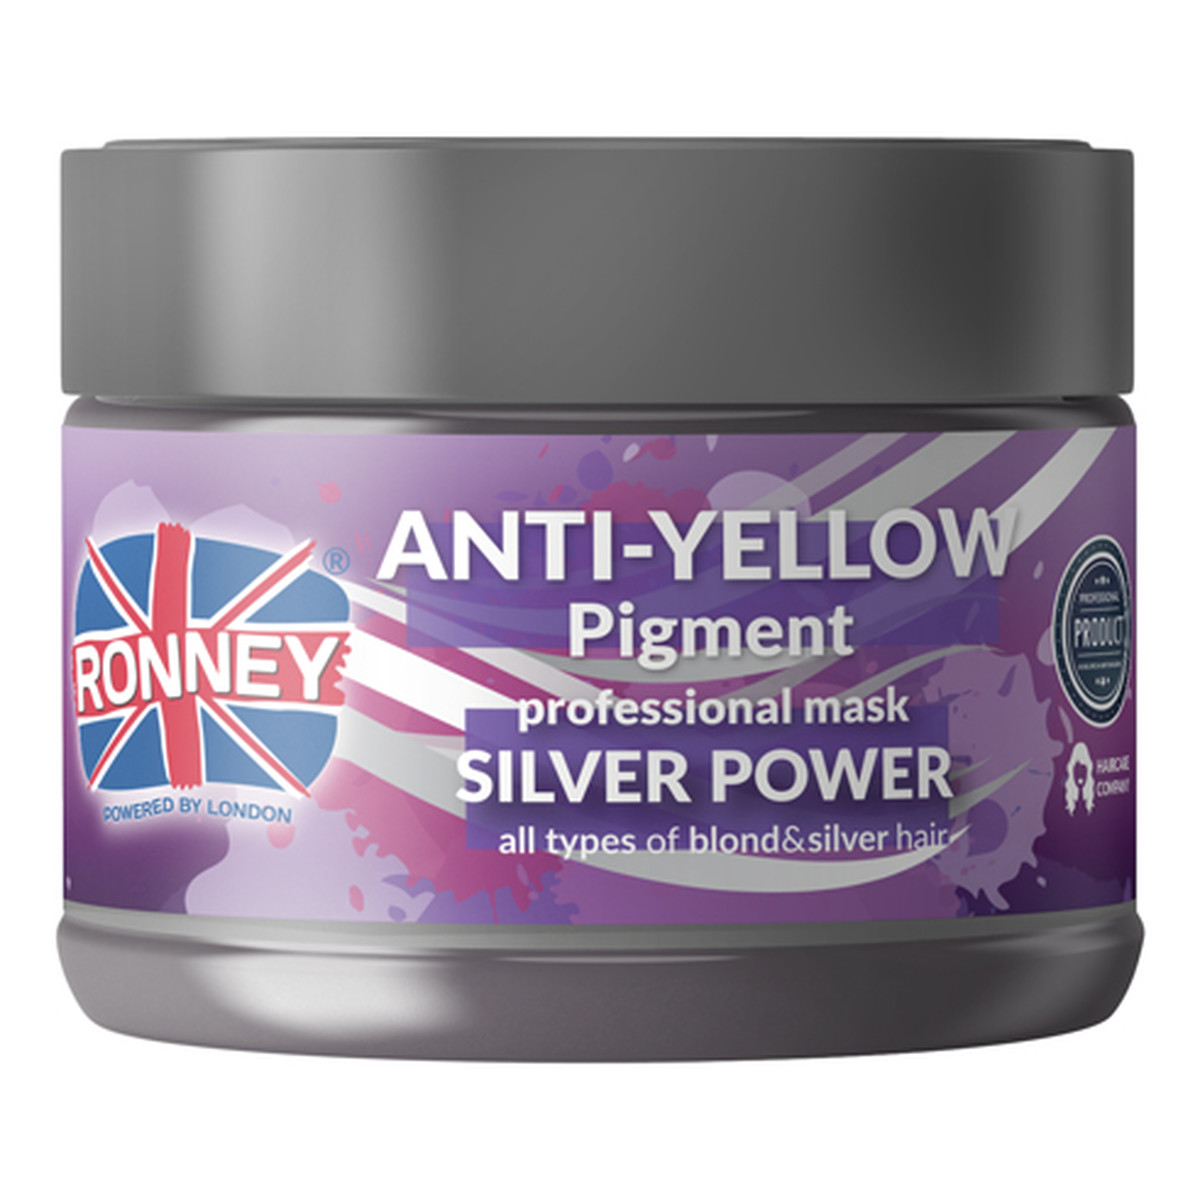 Ronney Anti-yellow silver power professional mask srebrna maska do włosów blond rozjaśnianych i siwych 300ml